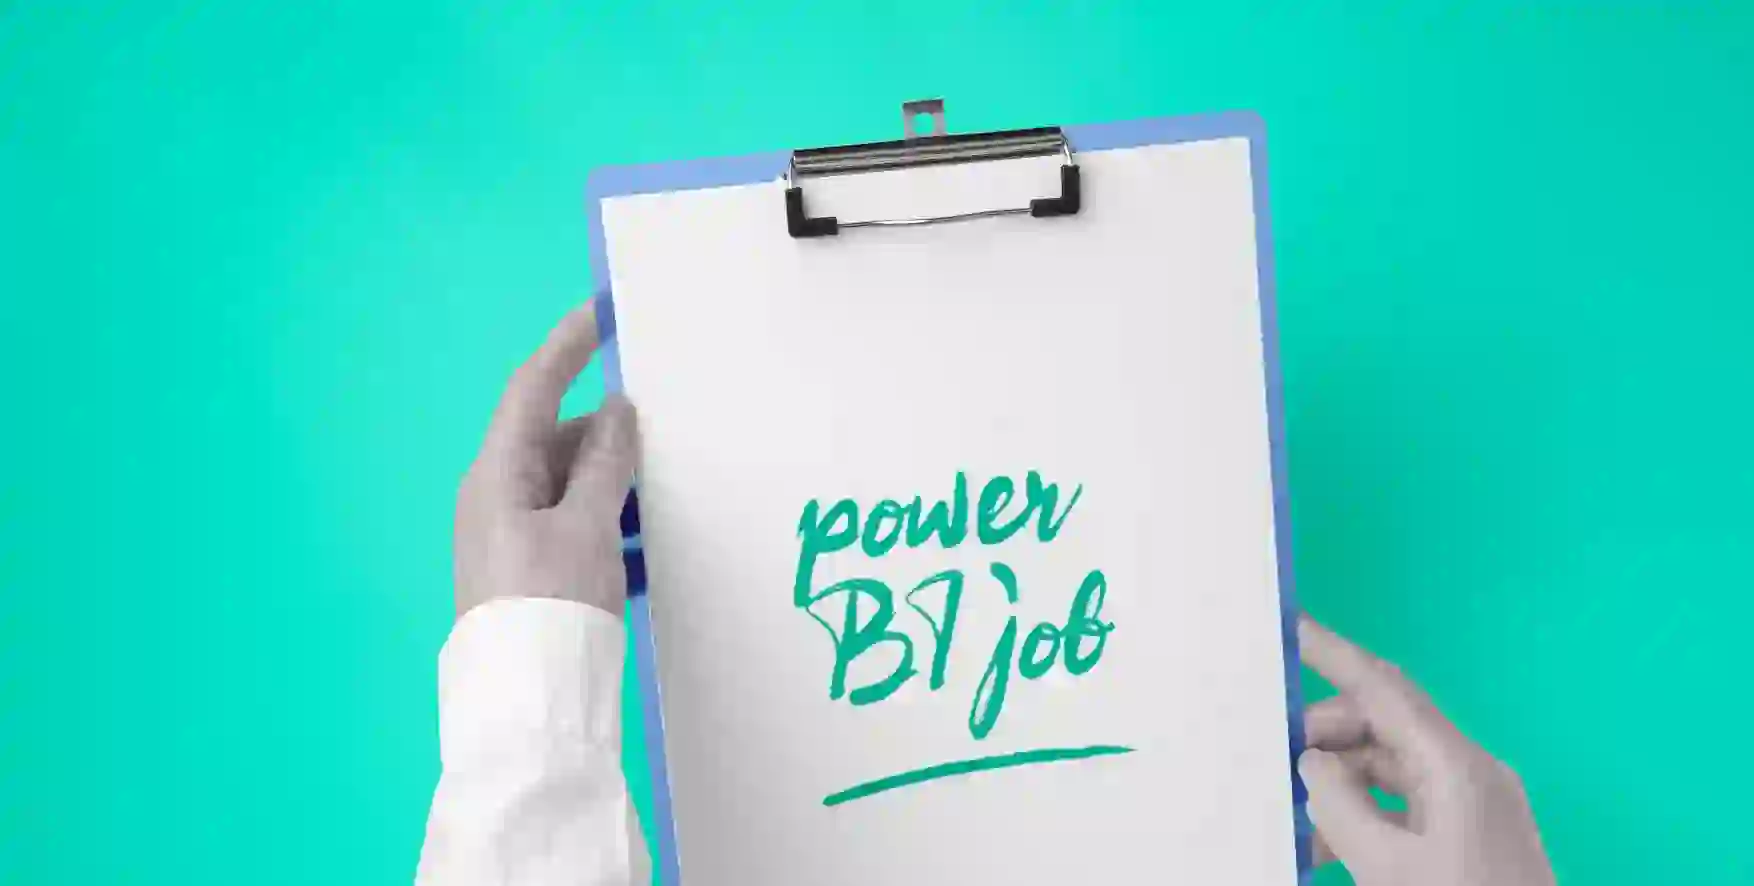 Power BI job written on a piece of paper in a clipboard